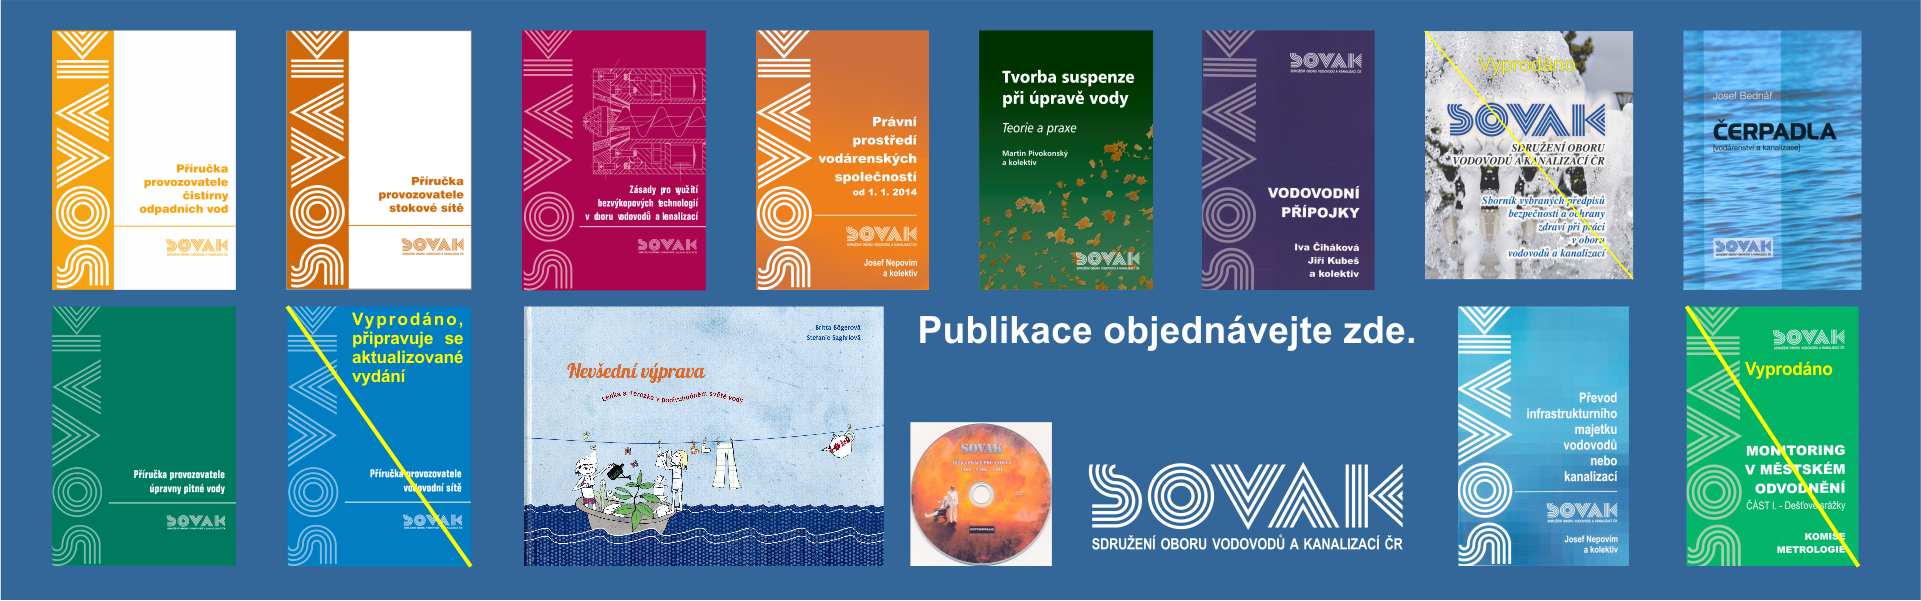 Přehled publikací, které nabízí k zakoupení SOVAK ČR